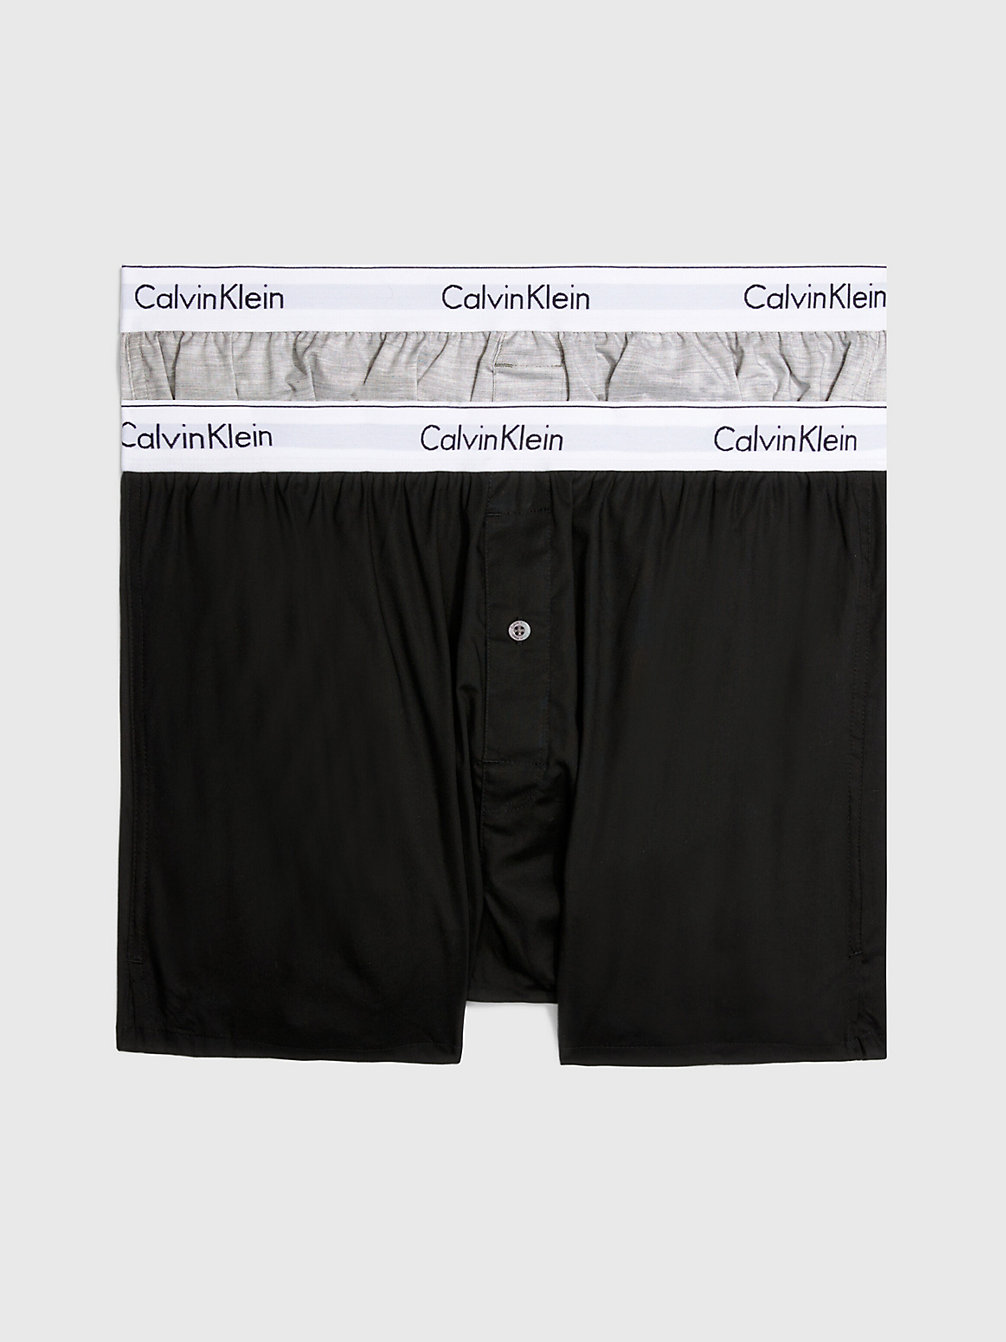 BLACK/GREY HEATHER > 2er-Pack Slim Fit Boxershorts - Modern Cotton > undefined Herren - Calvin Klein